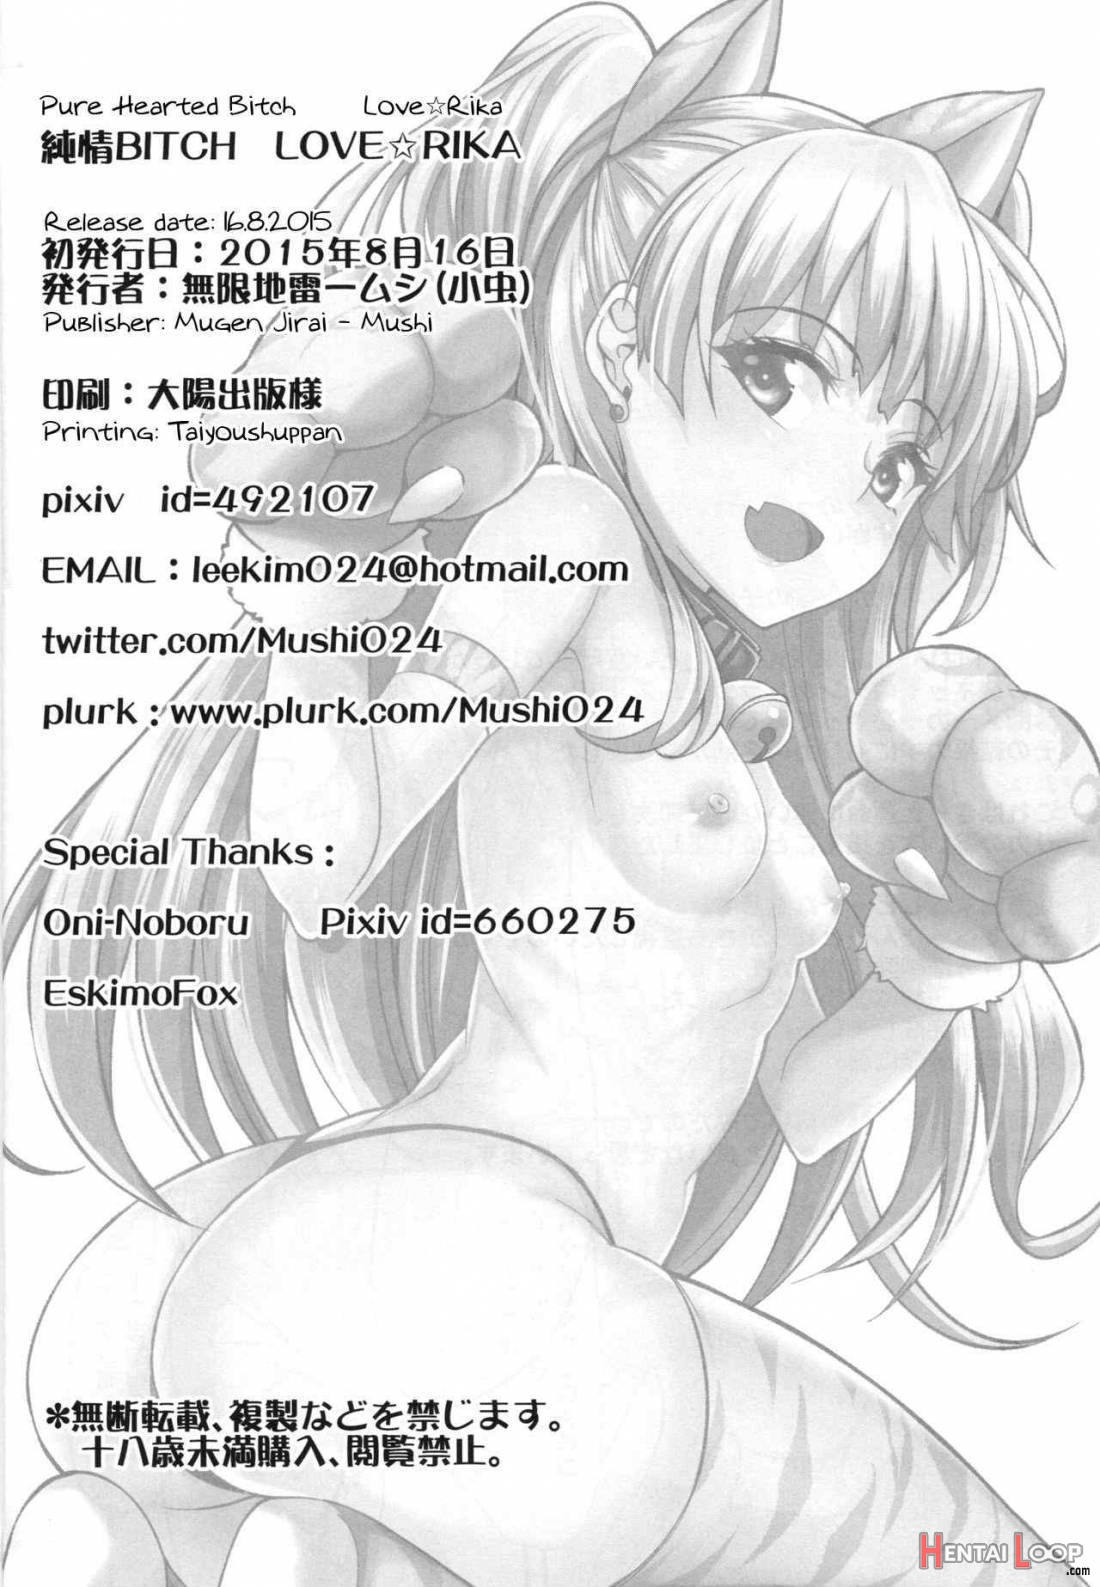 Junjou Bitch Love★rika page 25